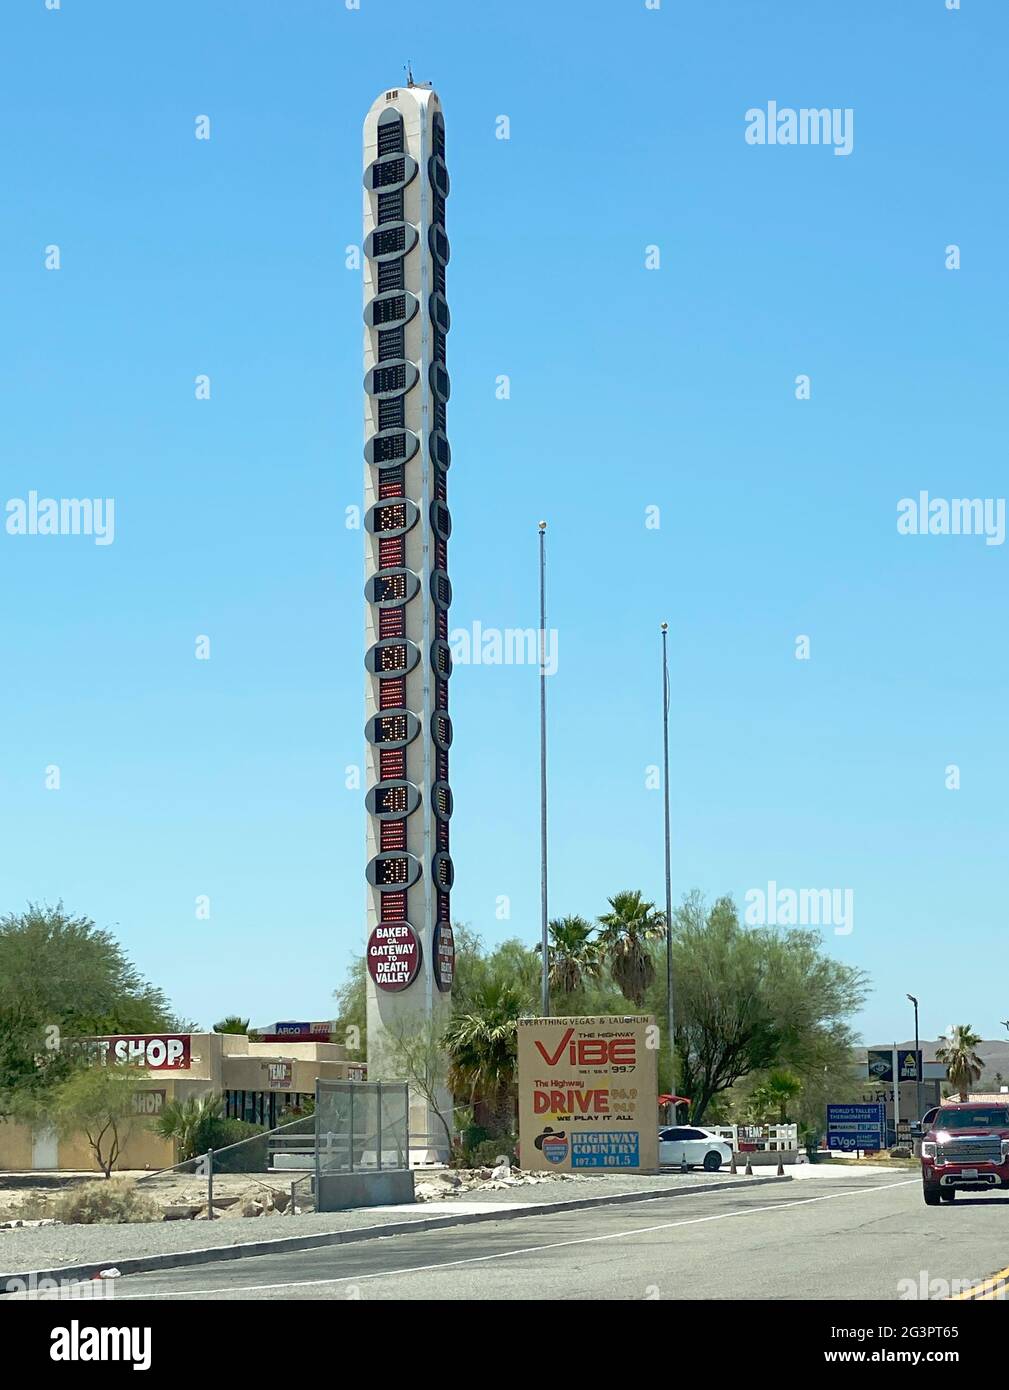 Weltweit Größtes Thermometer Stockfotos und -bilder Kaufen - Alamy